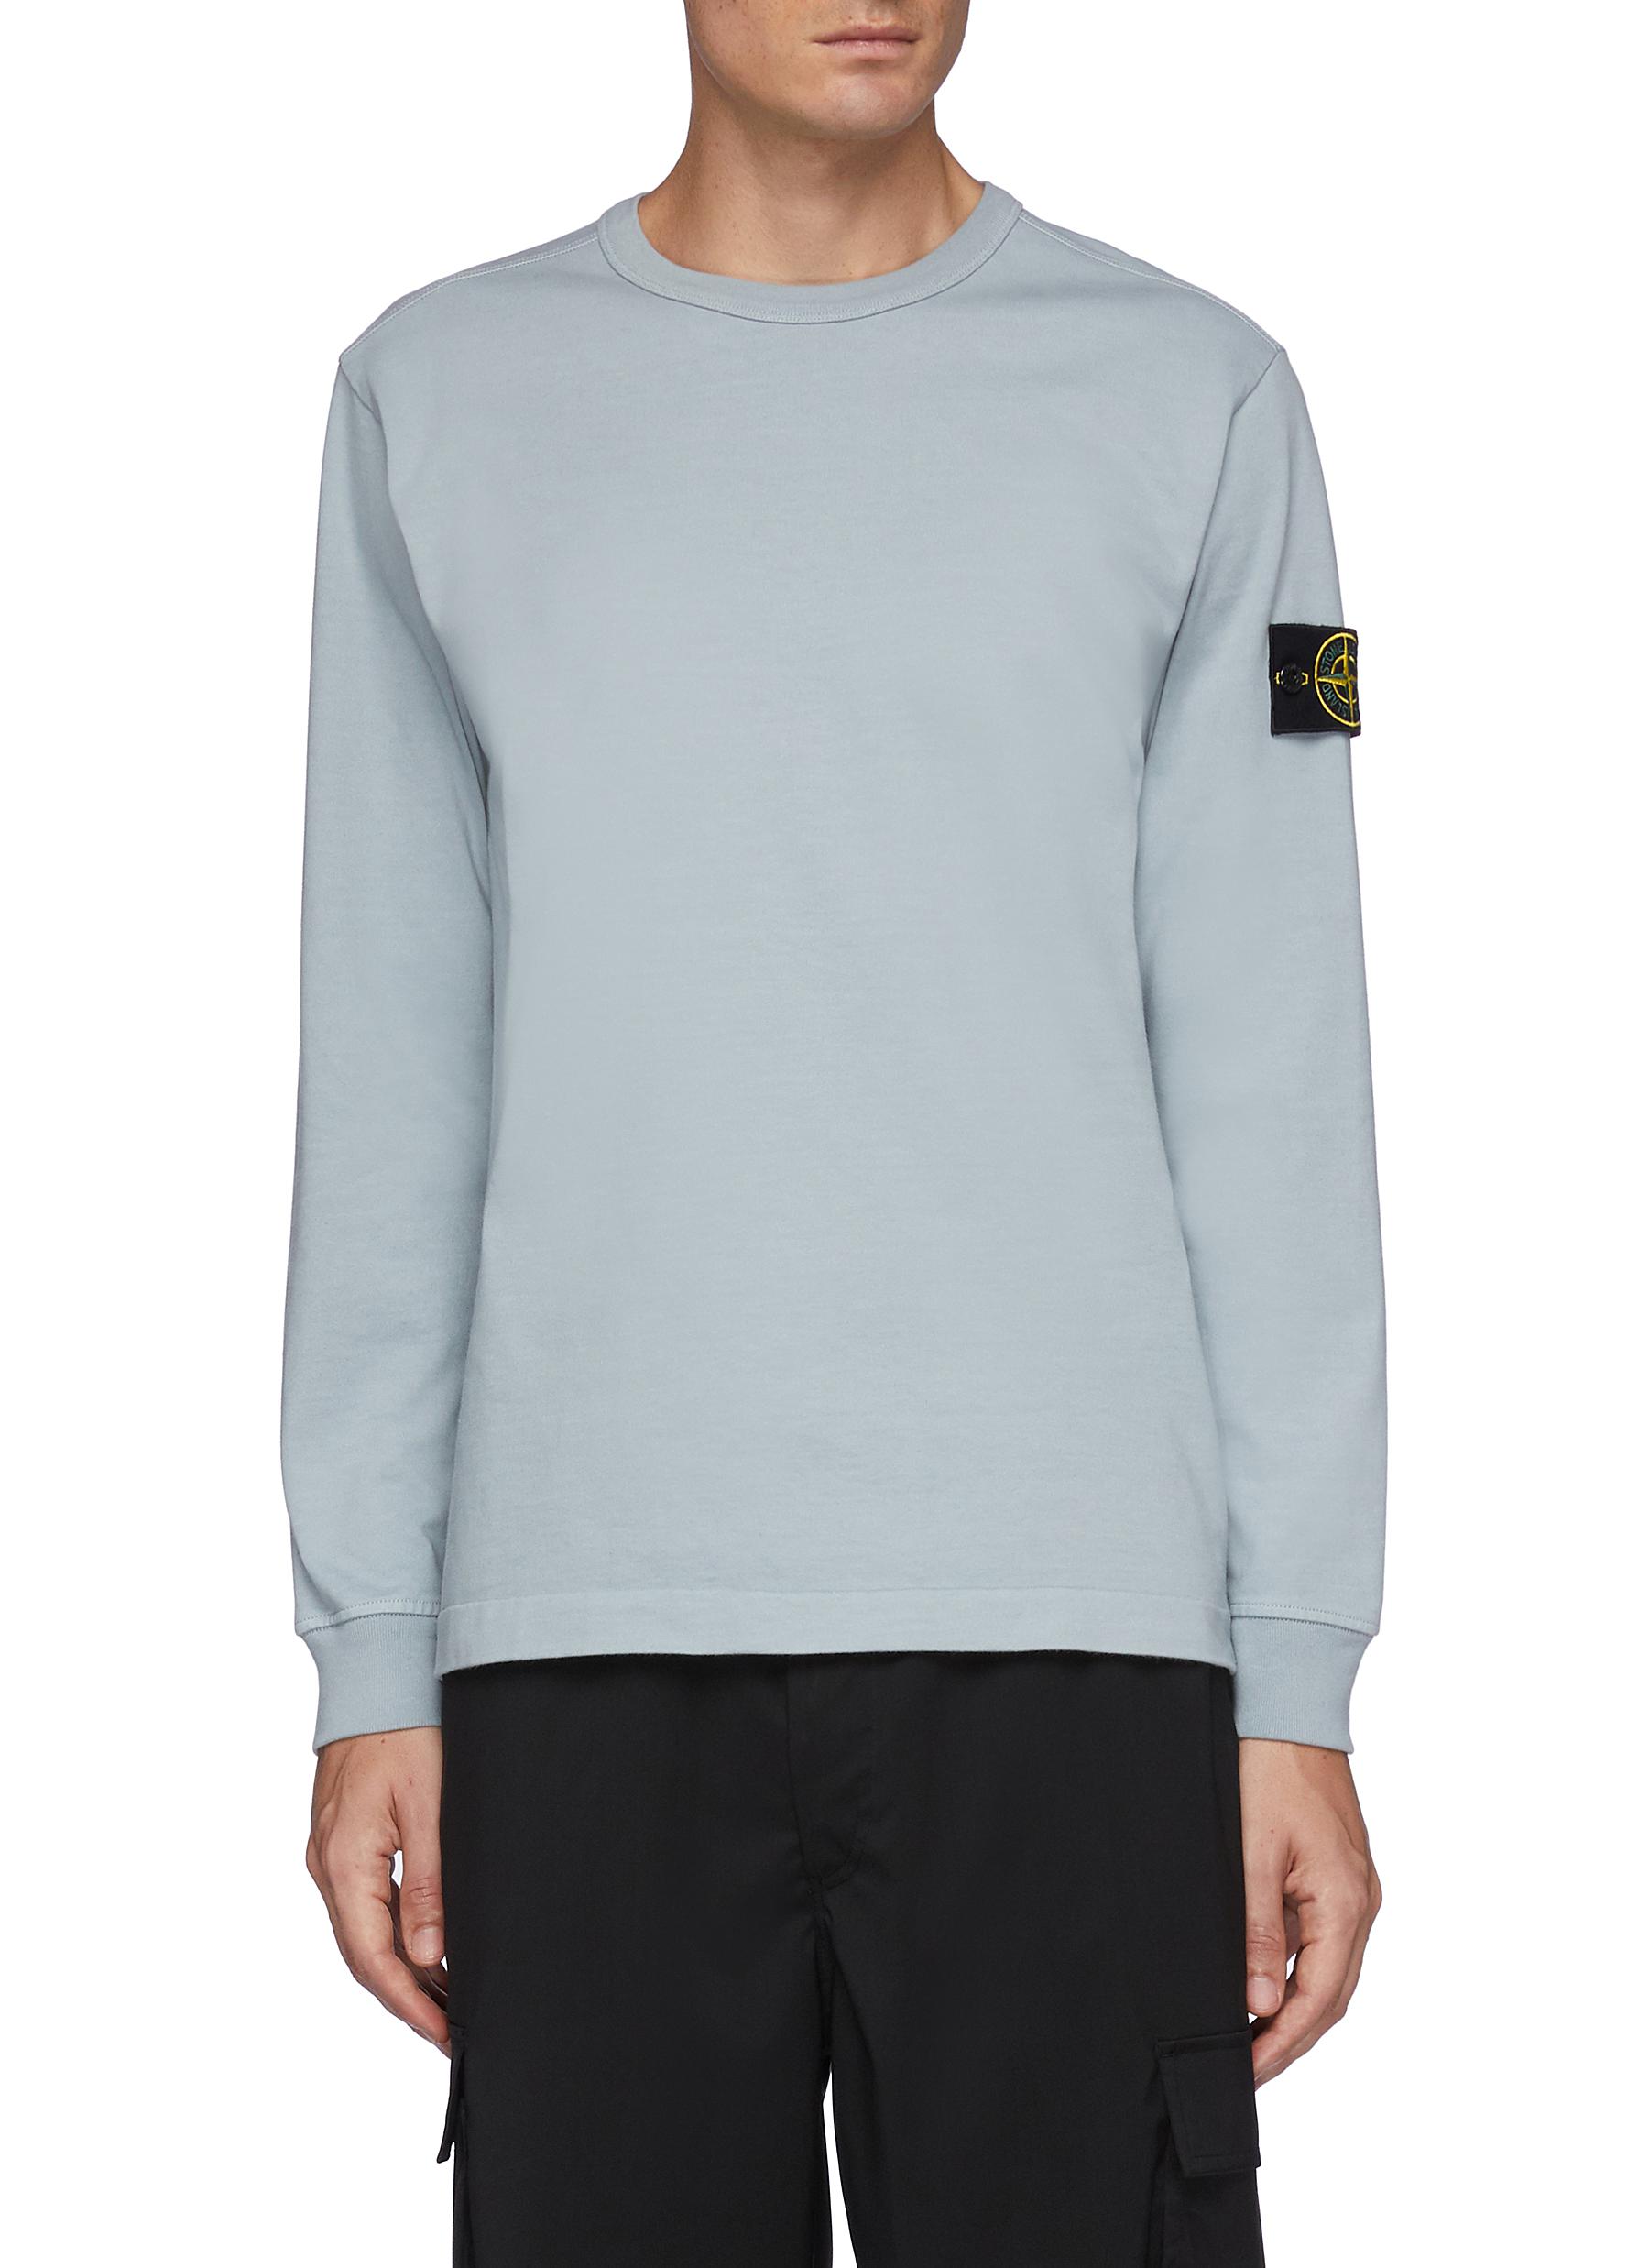 Branded Tag Appliqued Cotton Jersey Crewneck Sweatshirt